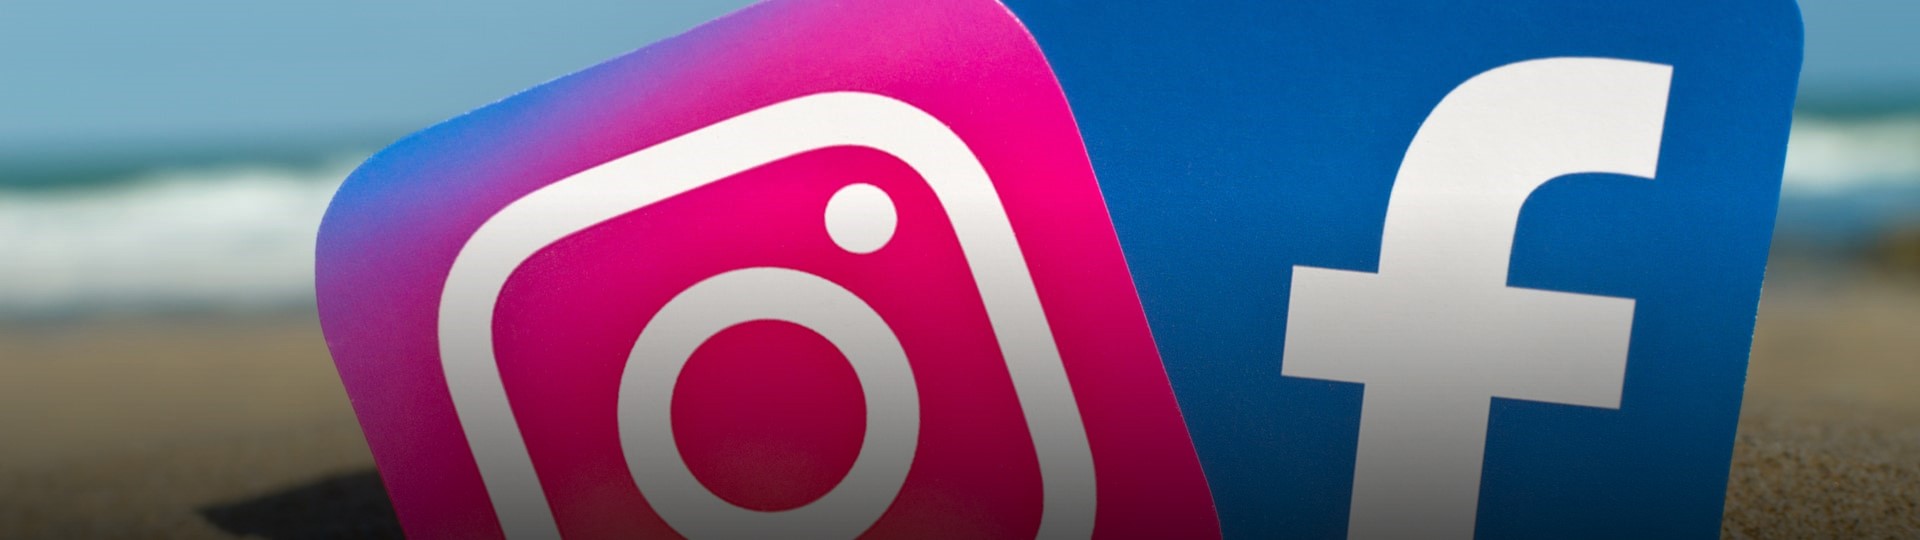 Facebook a instagram umožní uživatelům skrýt ukazování počtu lajků